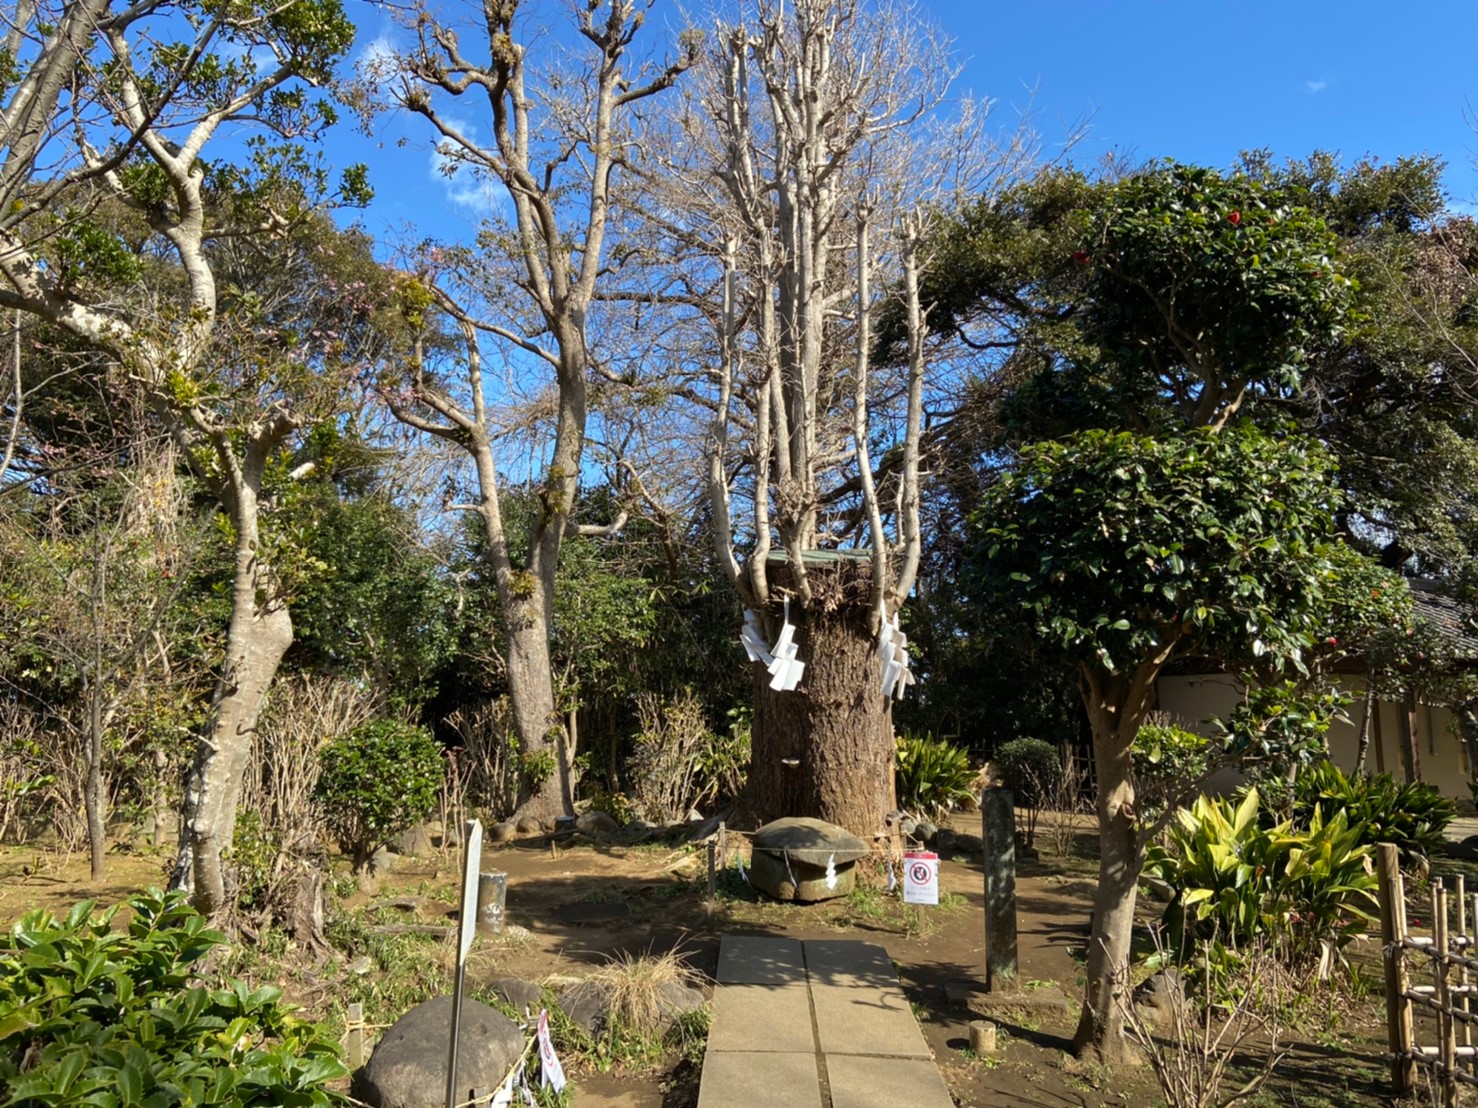 江島神社奥津宮